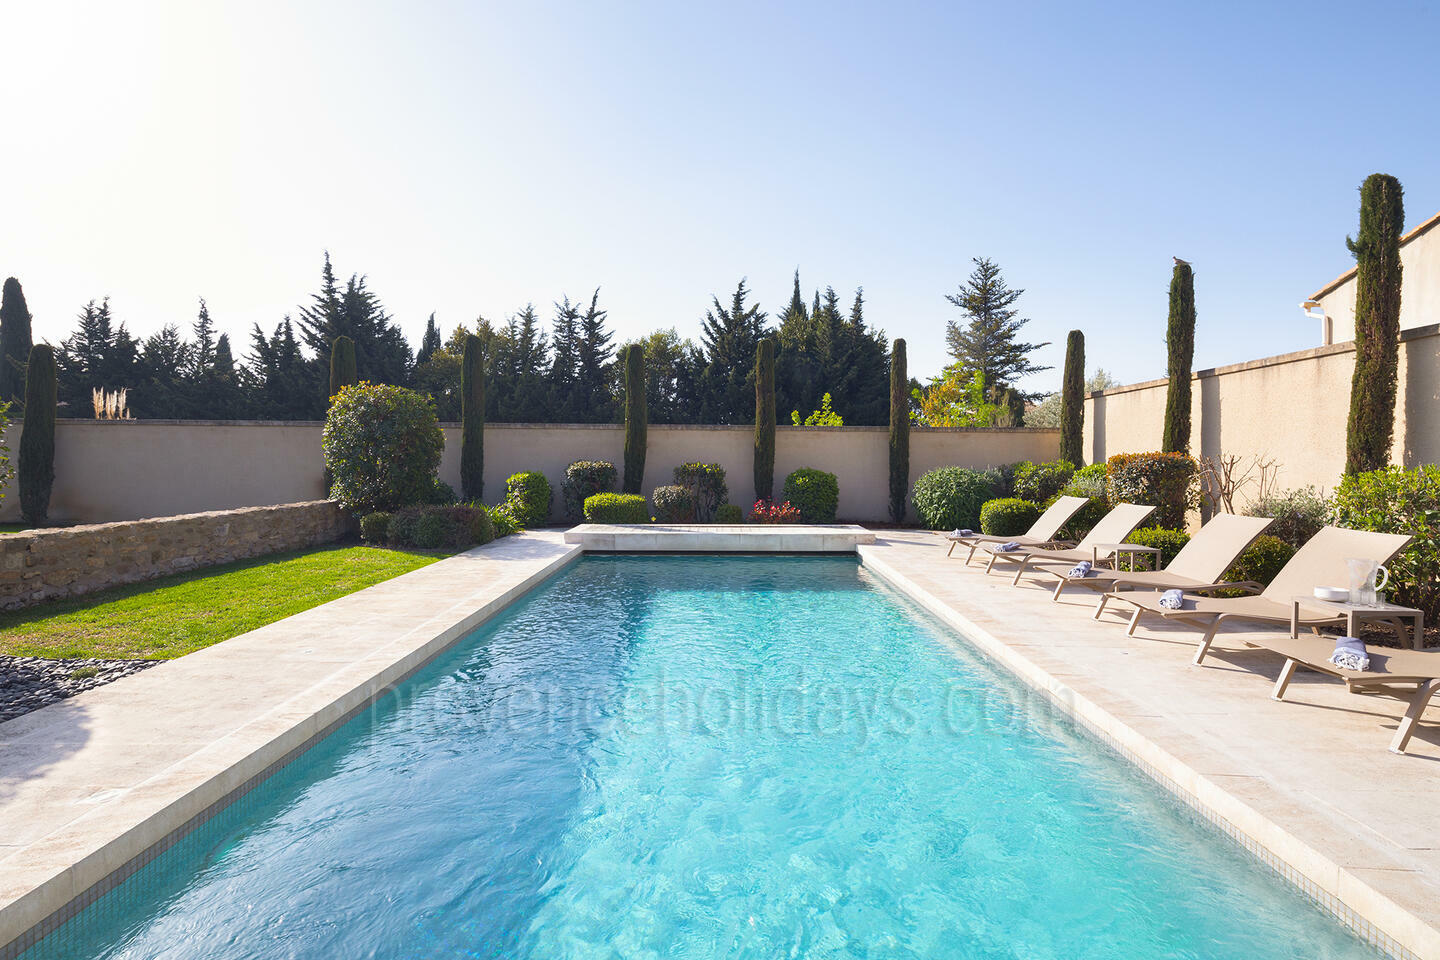 Location de vacances avec piscine chauffée 1 - Maison Eyguières: Villa: Pool